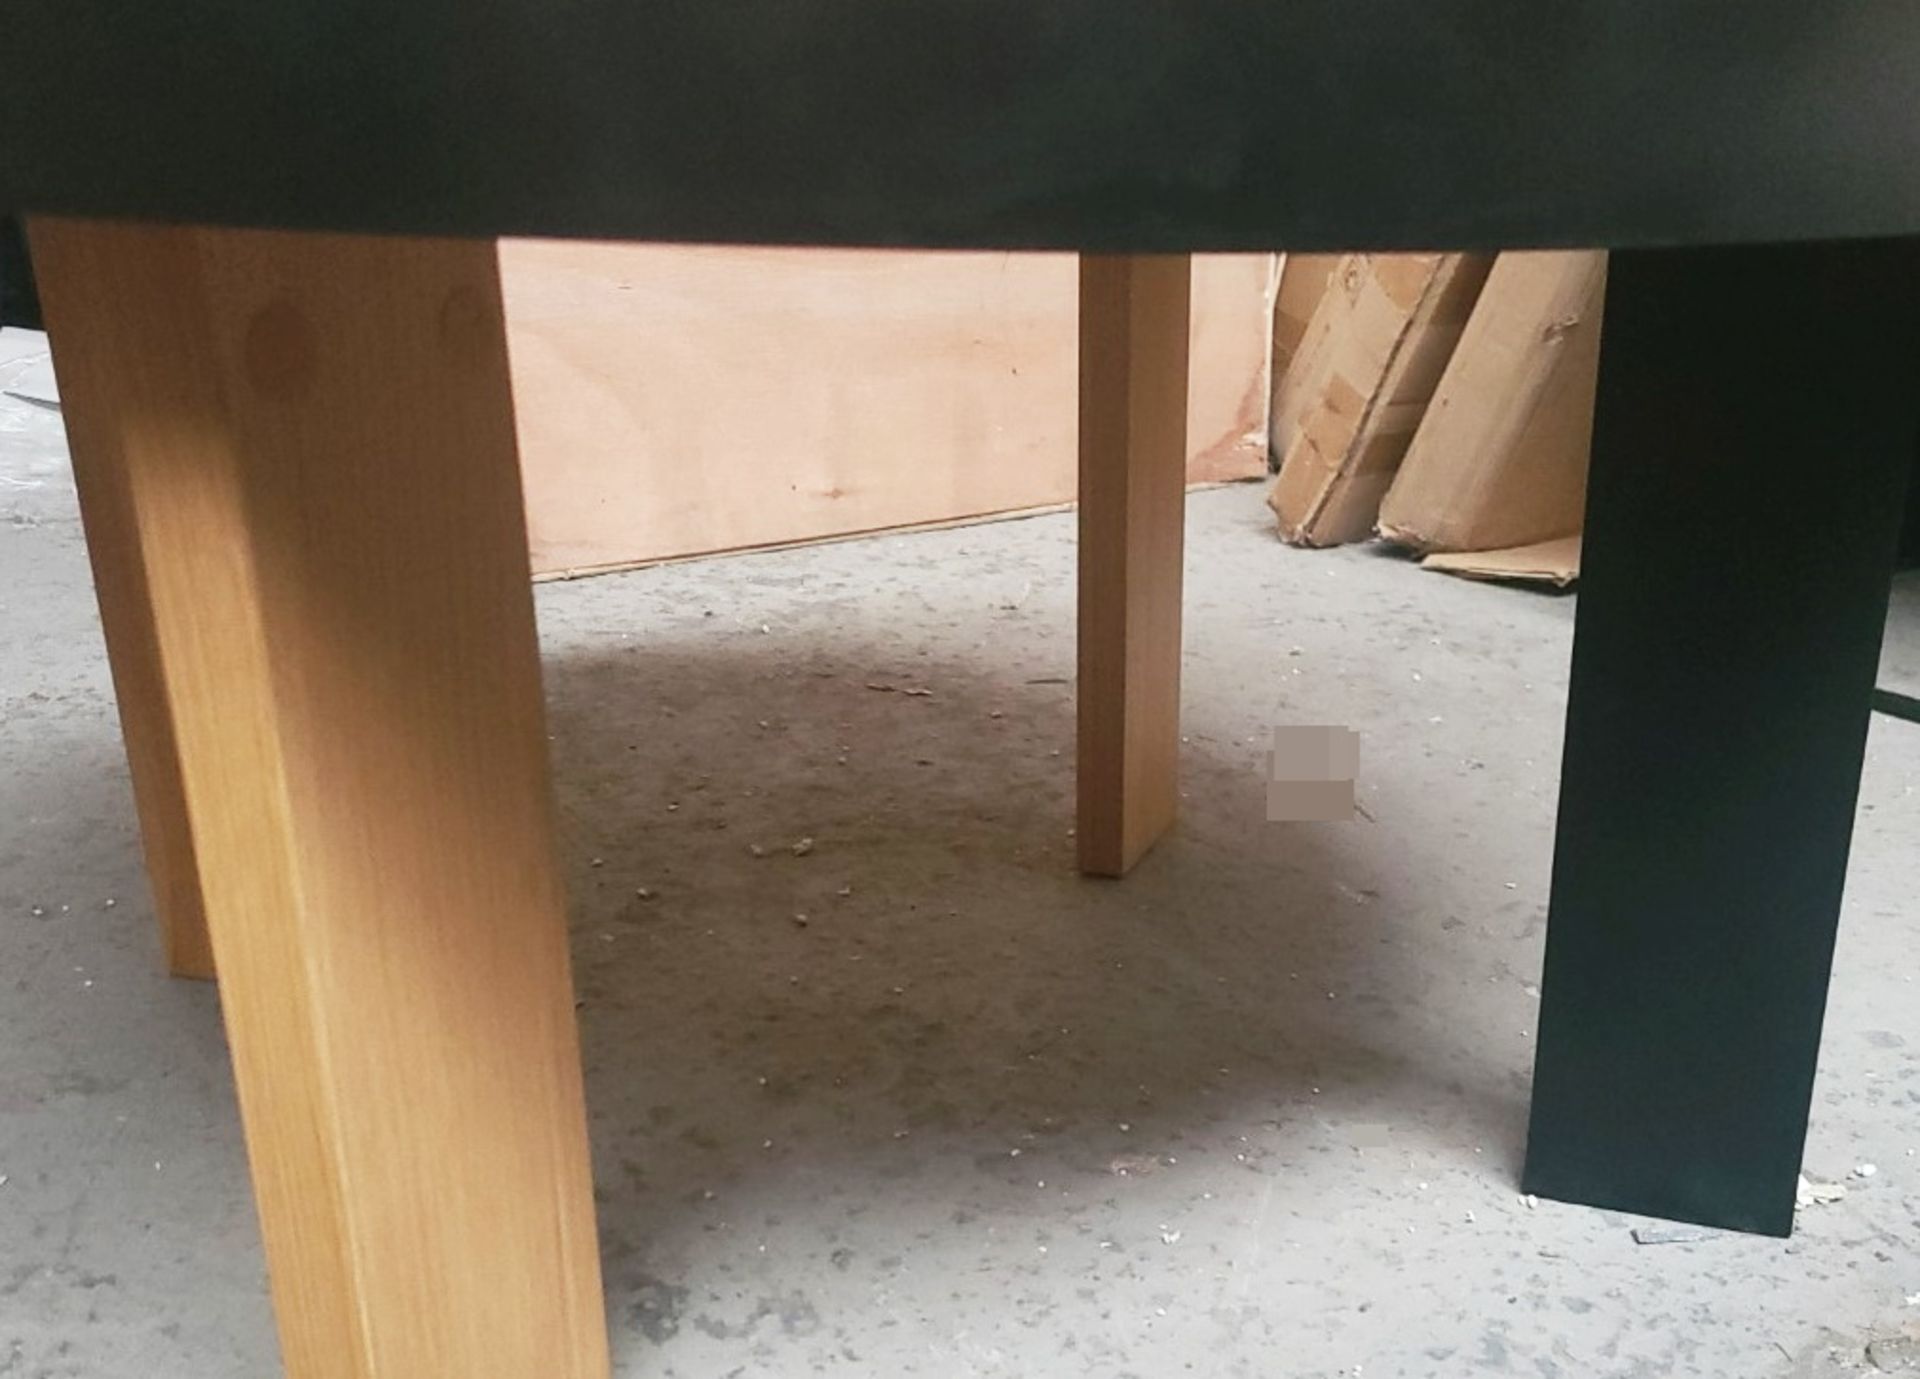 1 x TEMA HOME 'Bruno' Rodolphe Castellani Designed Coffee Table In Oak Veneer & Black Metal - Image 6 of 6